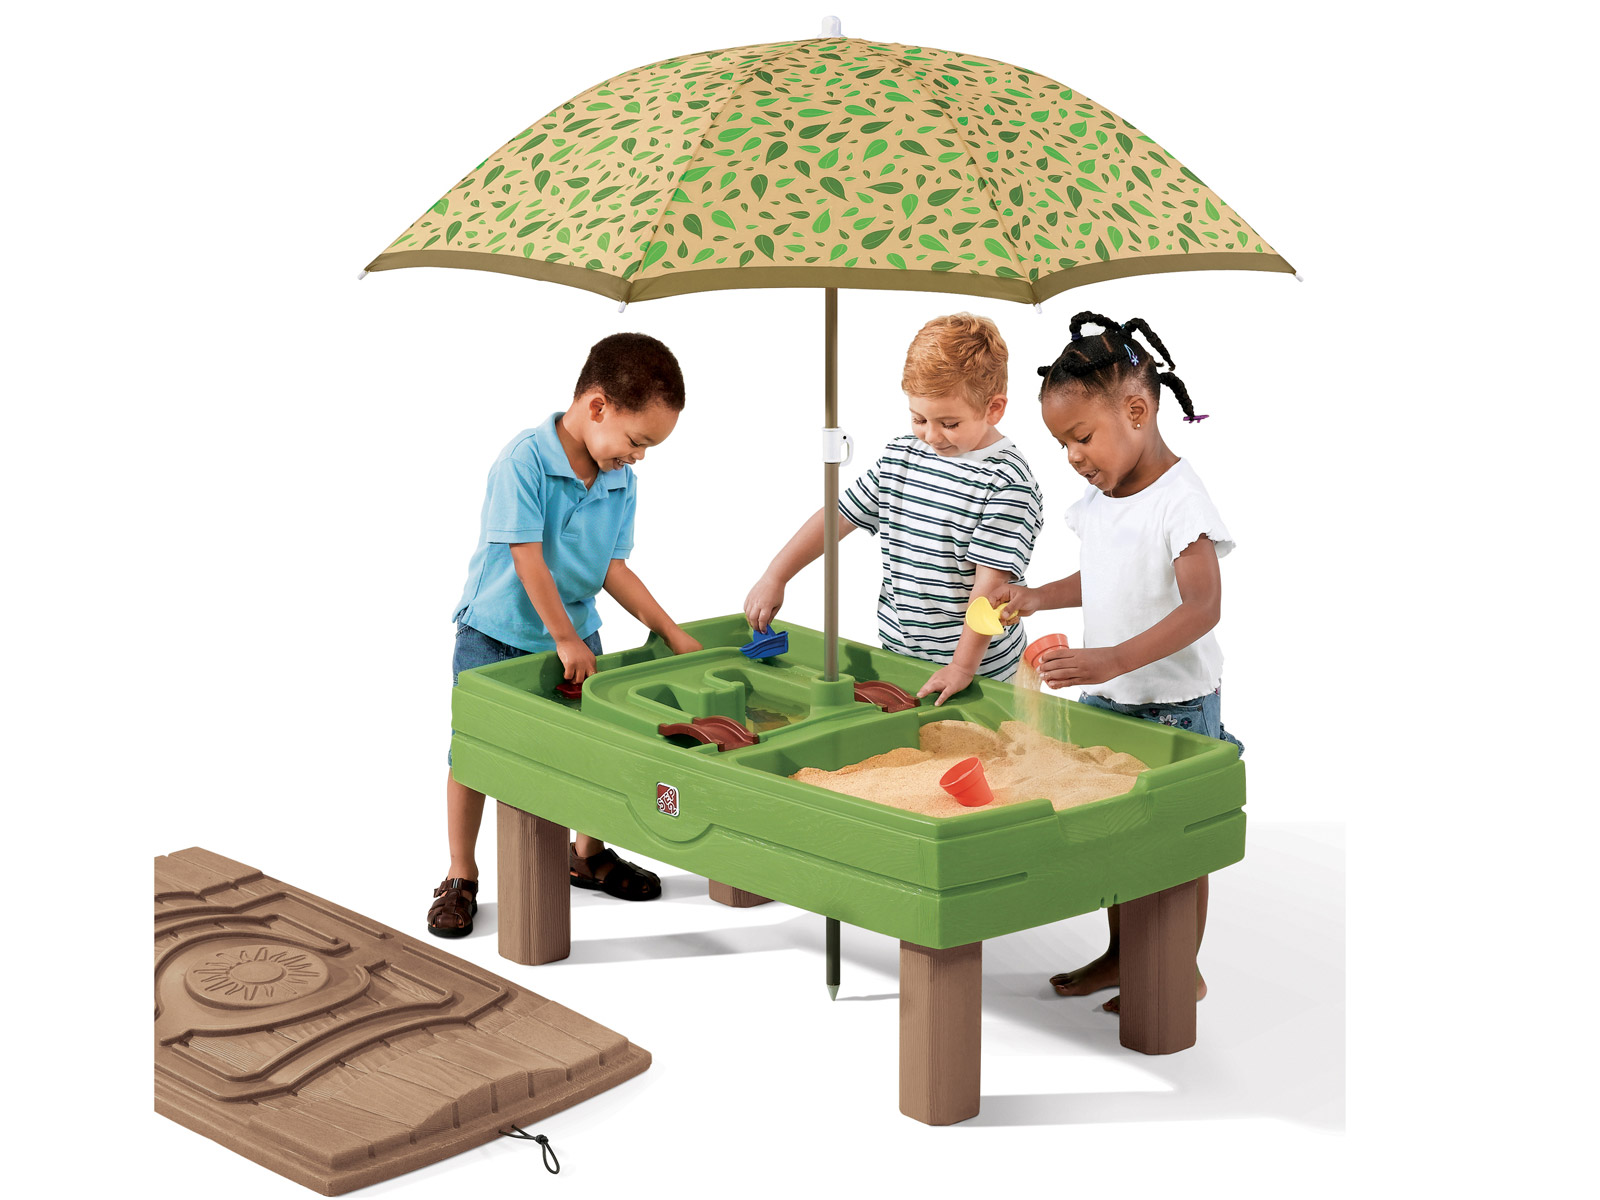 стол игровой детский для песка и воды